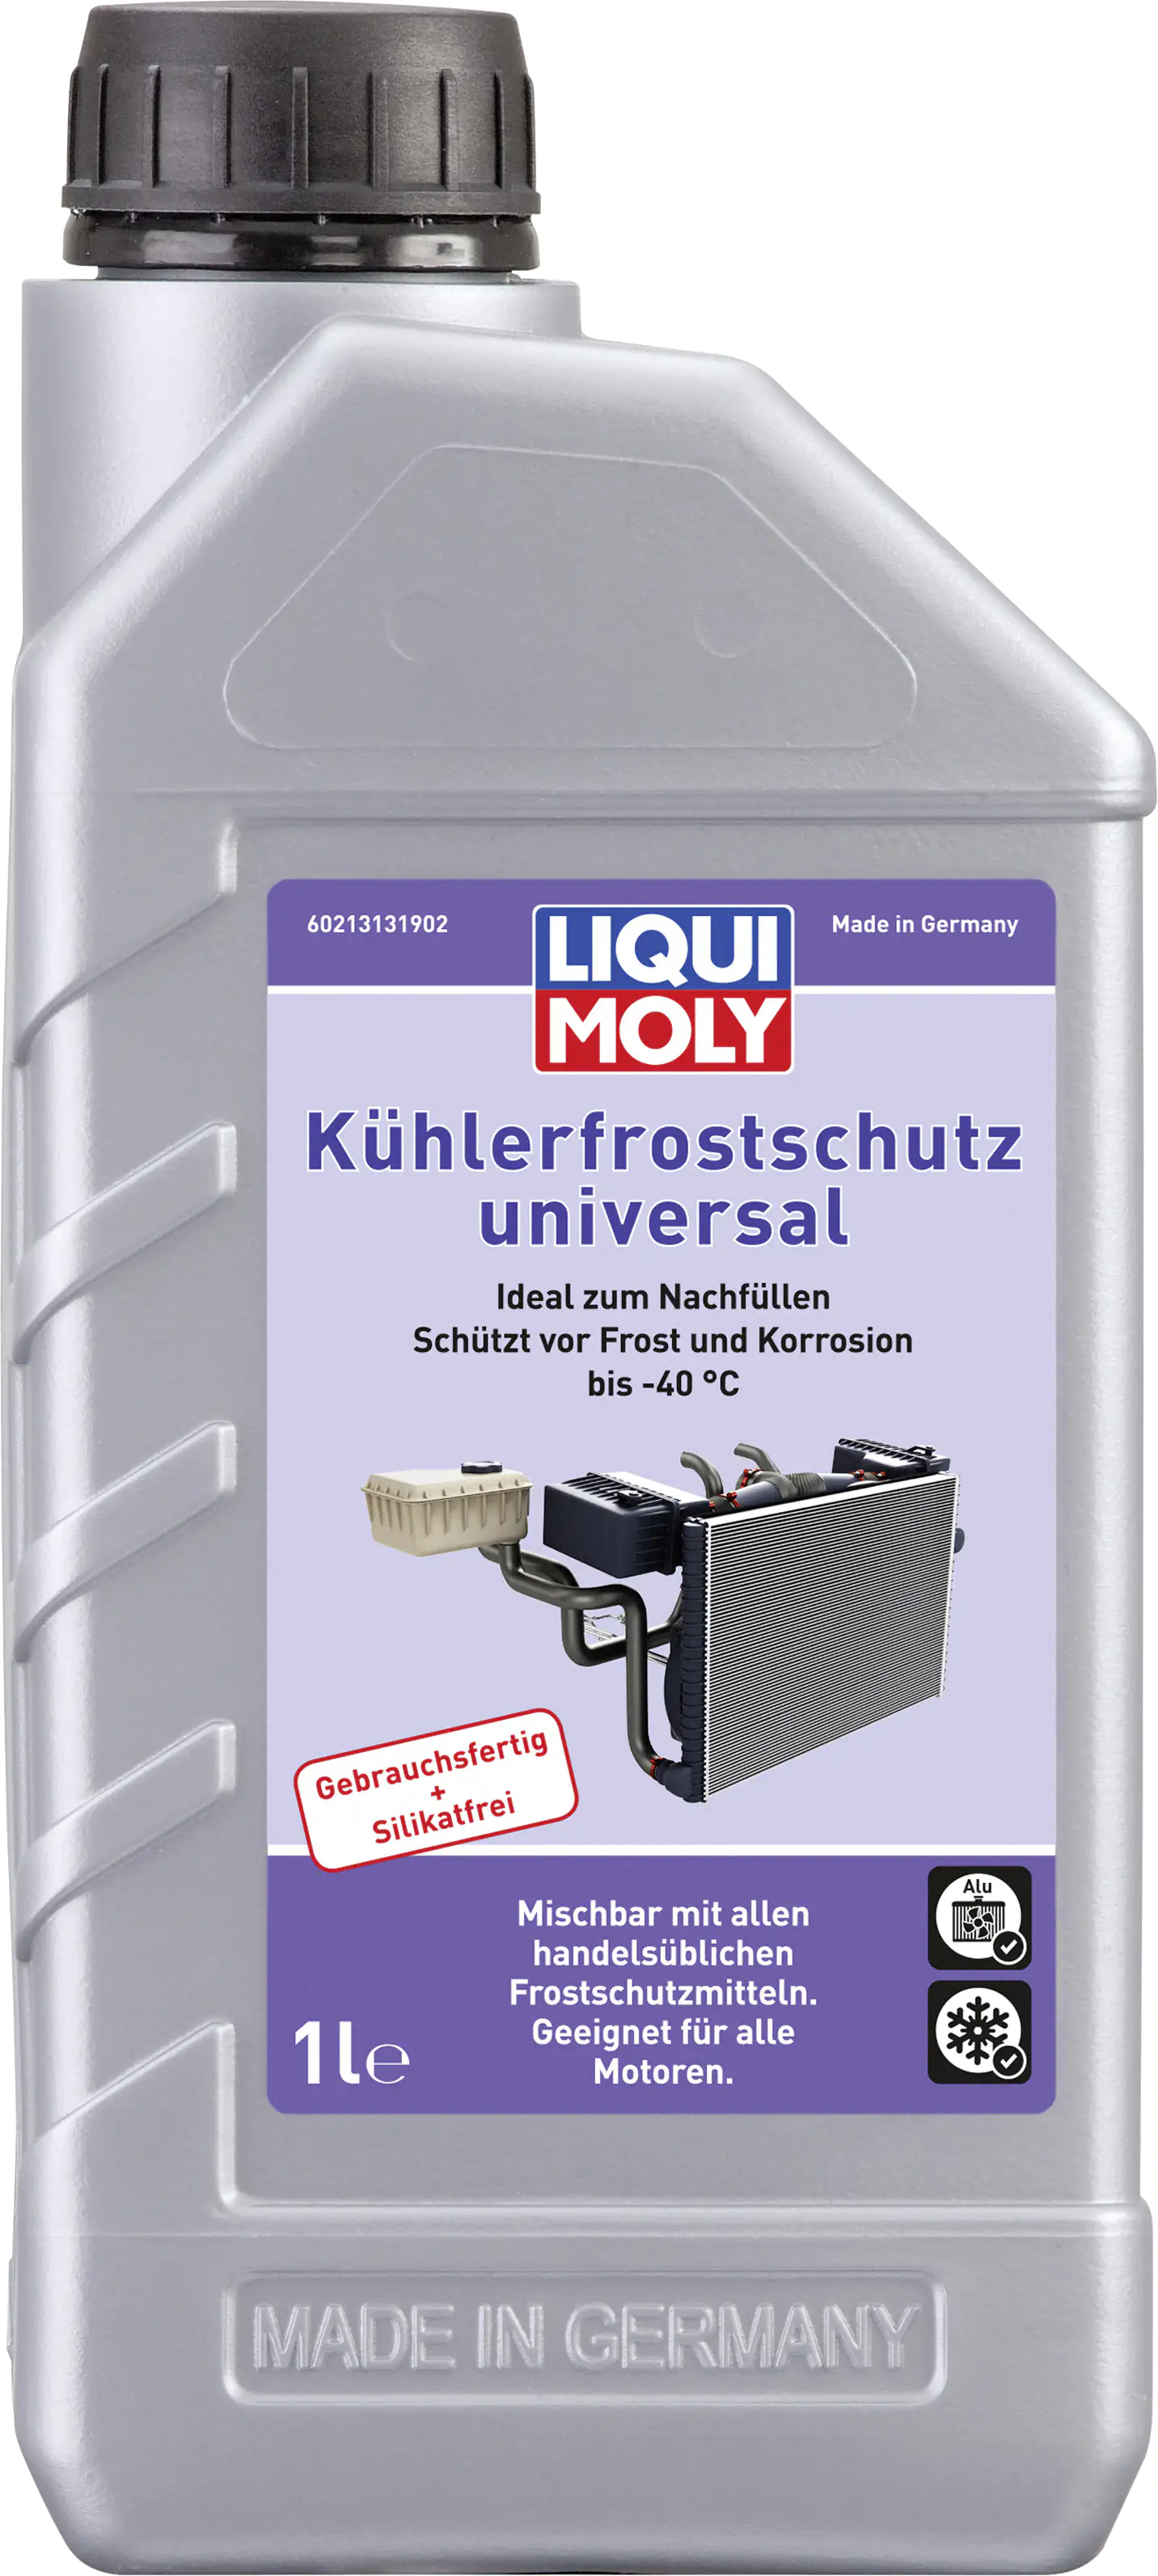 Liqui Moly Kühlerfrostschutz universal gebrauchsfertig 1 L kaufen